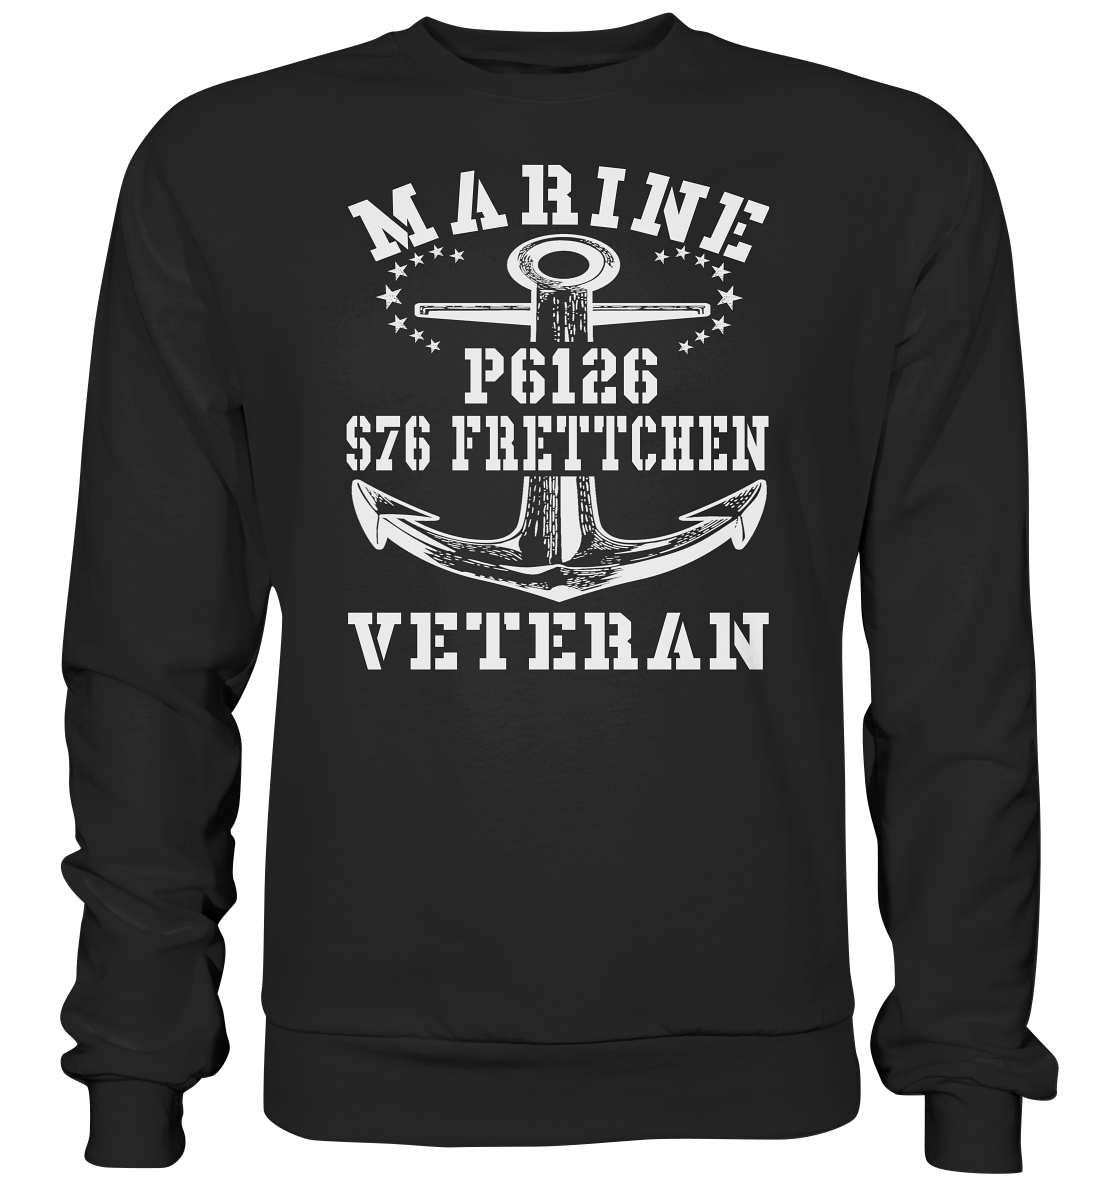 FK-Schnellboot P6126 FRETTCHEN Marine Veteran - Premium Sweatshirt